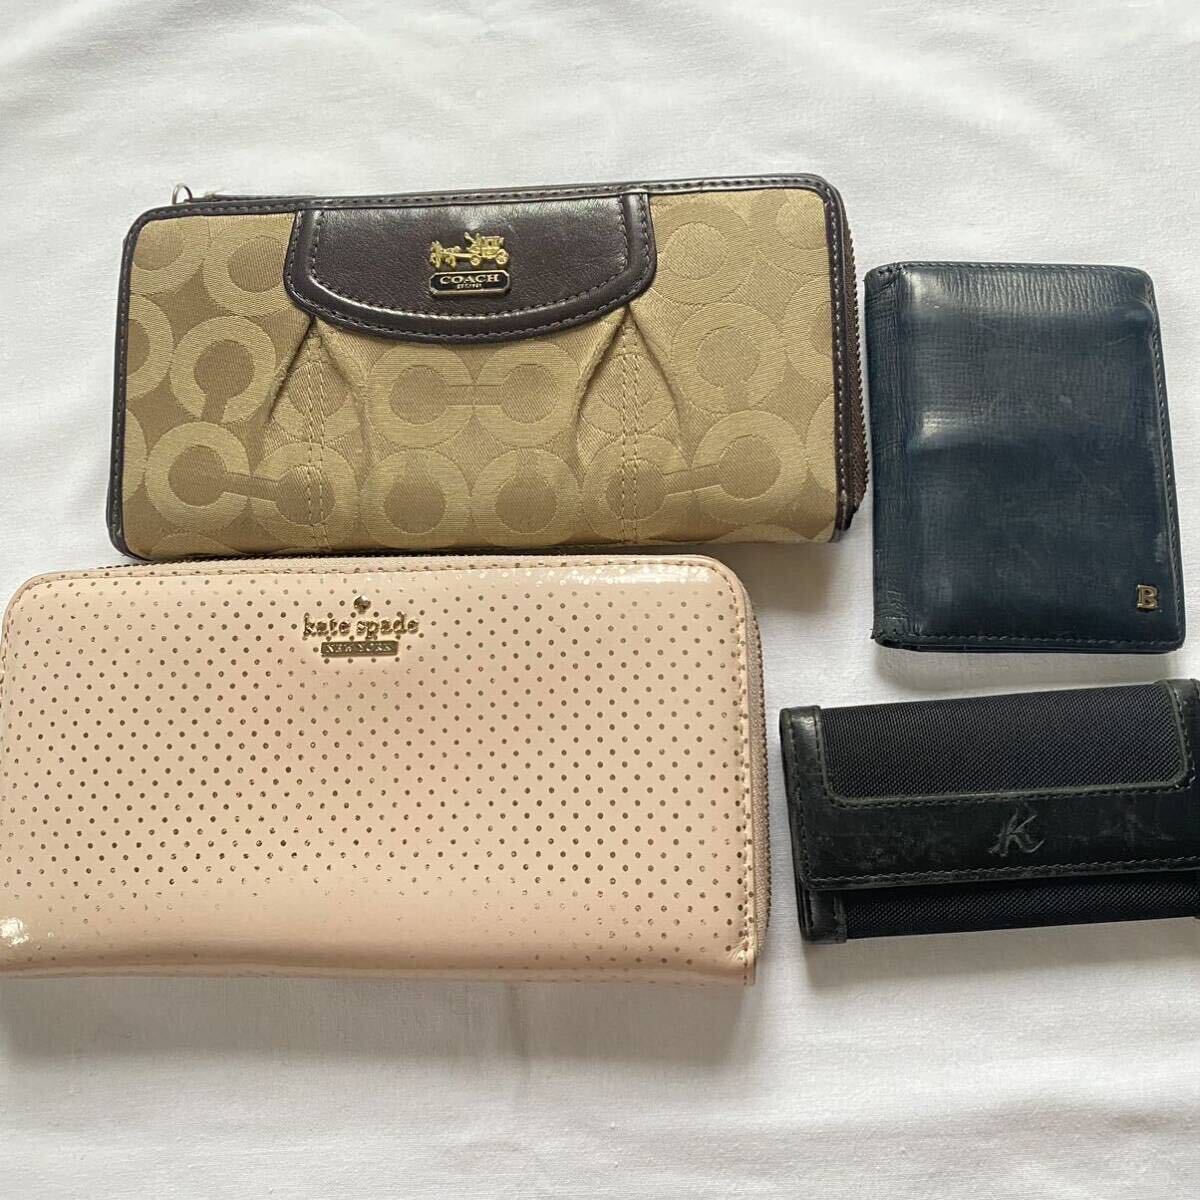  purse set sale bag set sale lady's men's set sale Junk bag summarize purse summarize long wallet Coach Lanvin 